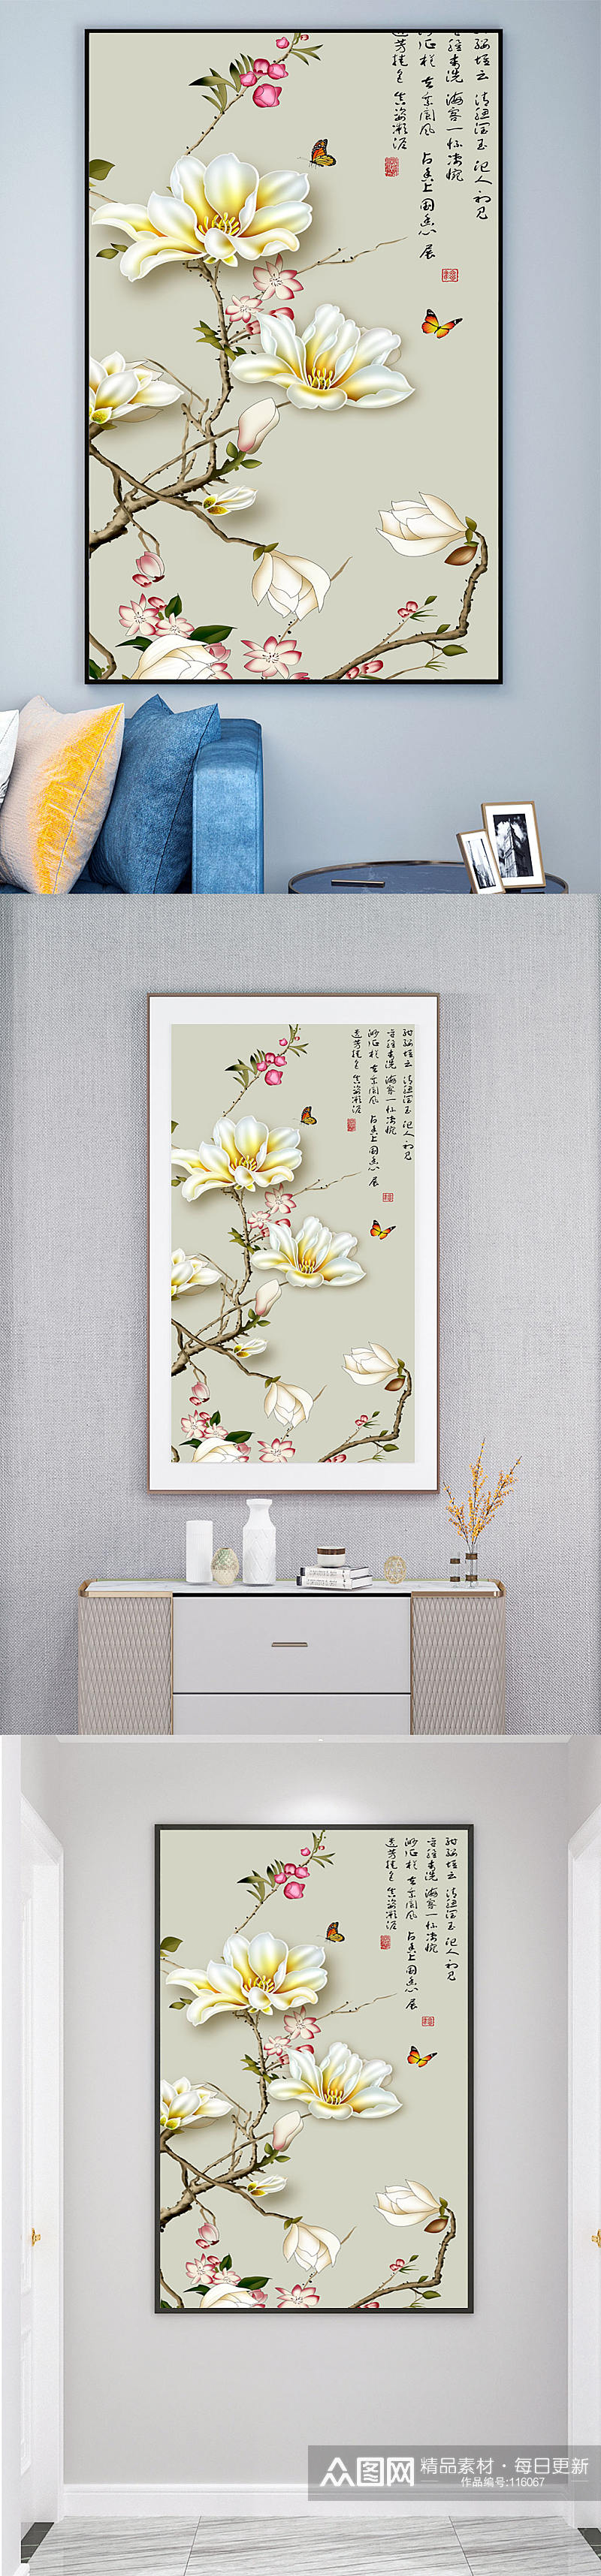 中式花卉玄关装饰画素材